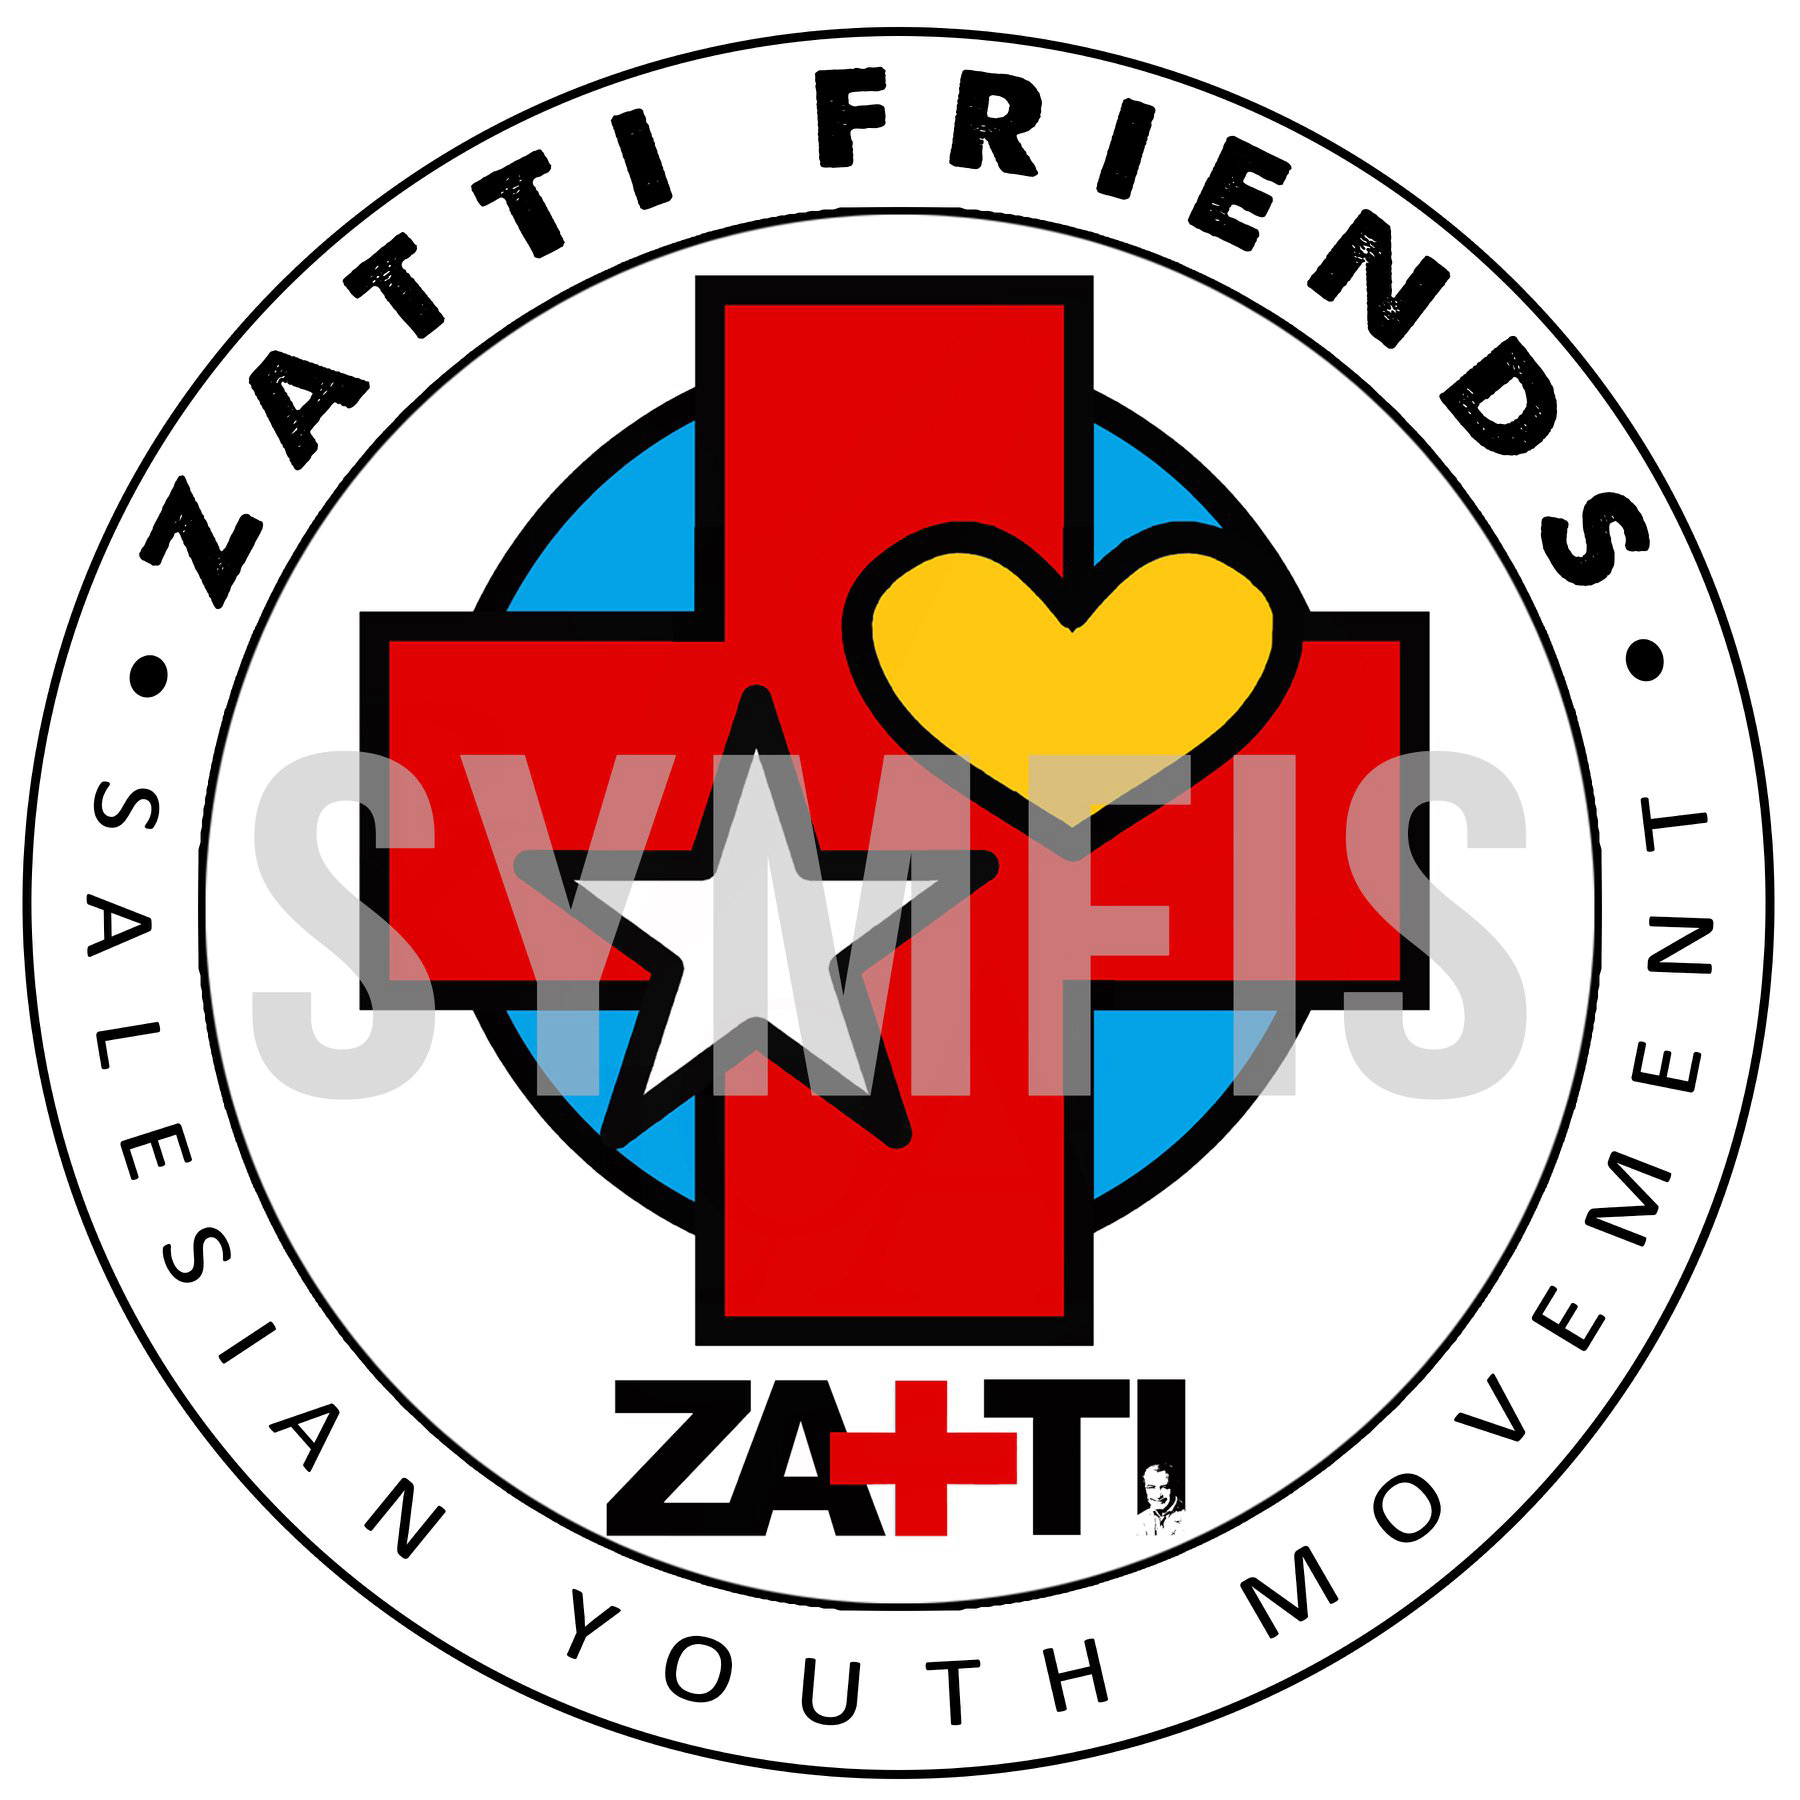 FIS-Zatti Friends.jpg